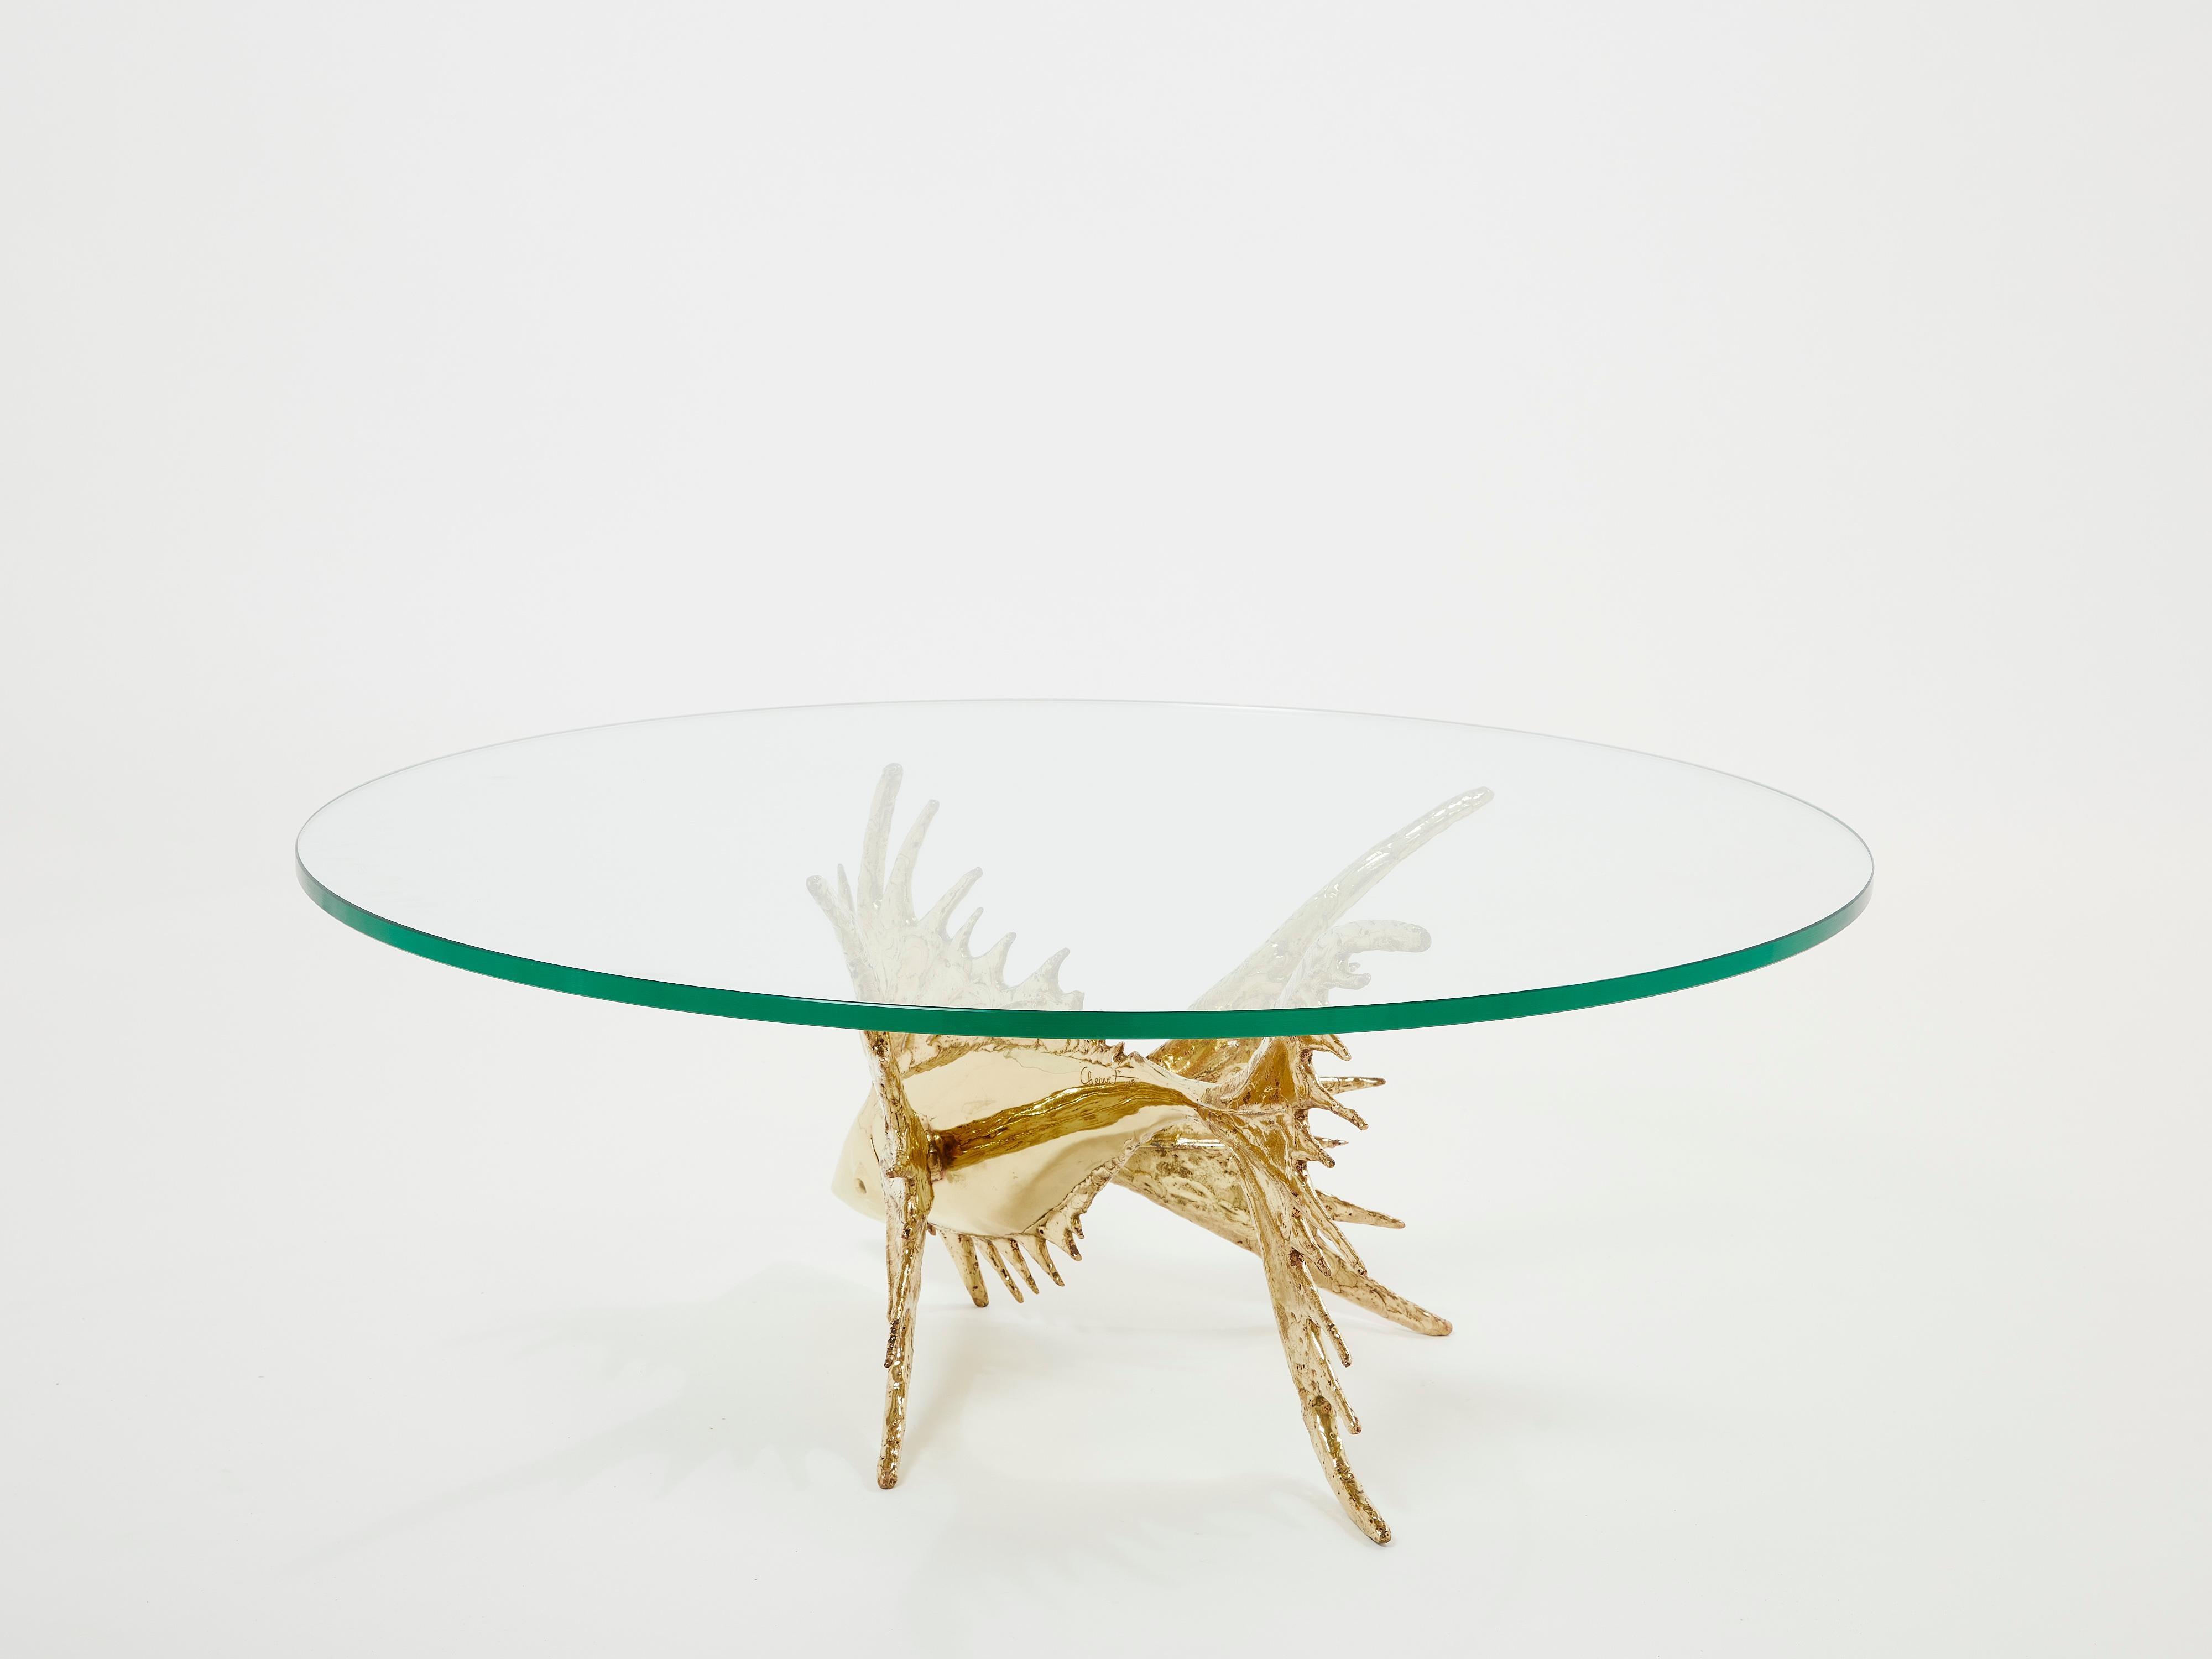 Unique Signed Alain Chervet Brass Fish Sculpture Coffee Table 1977 For Sale 1